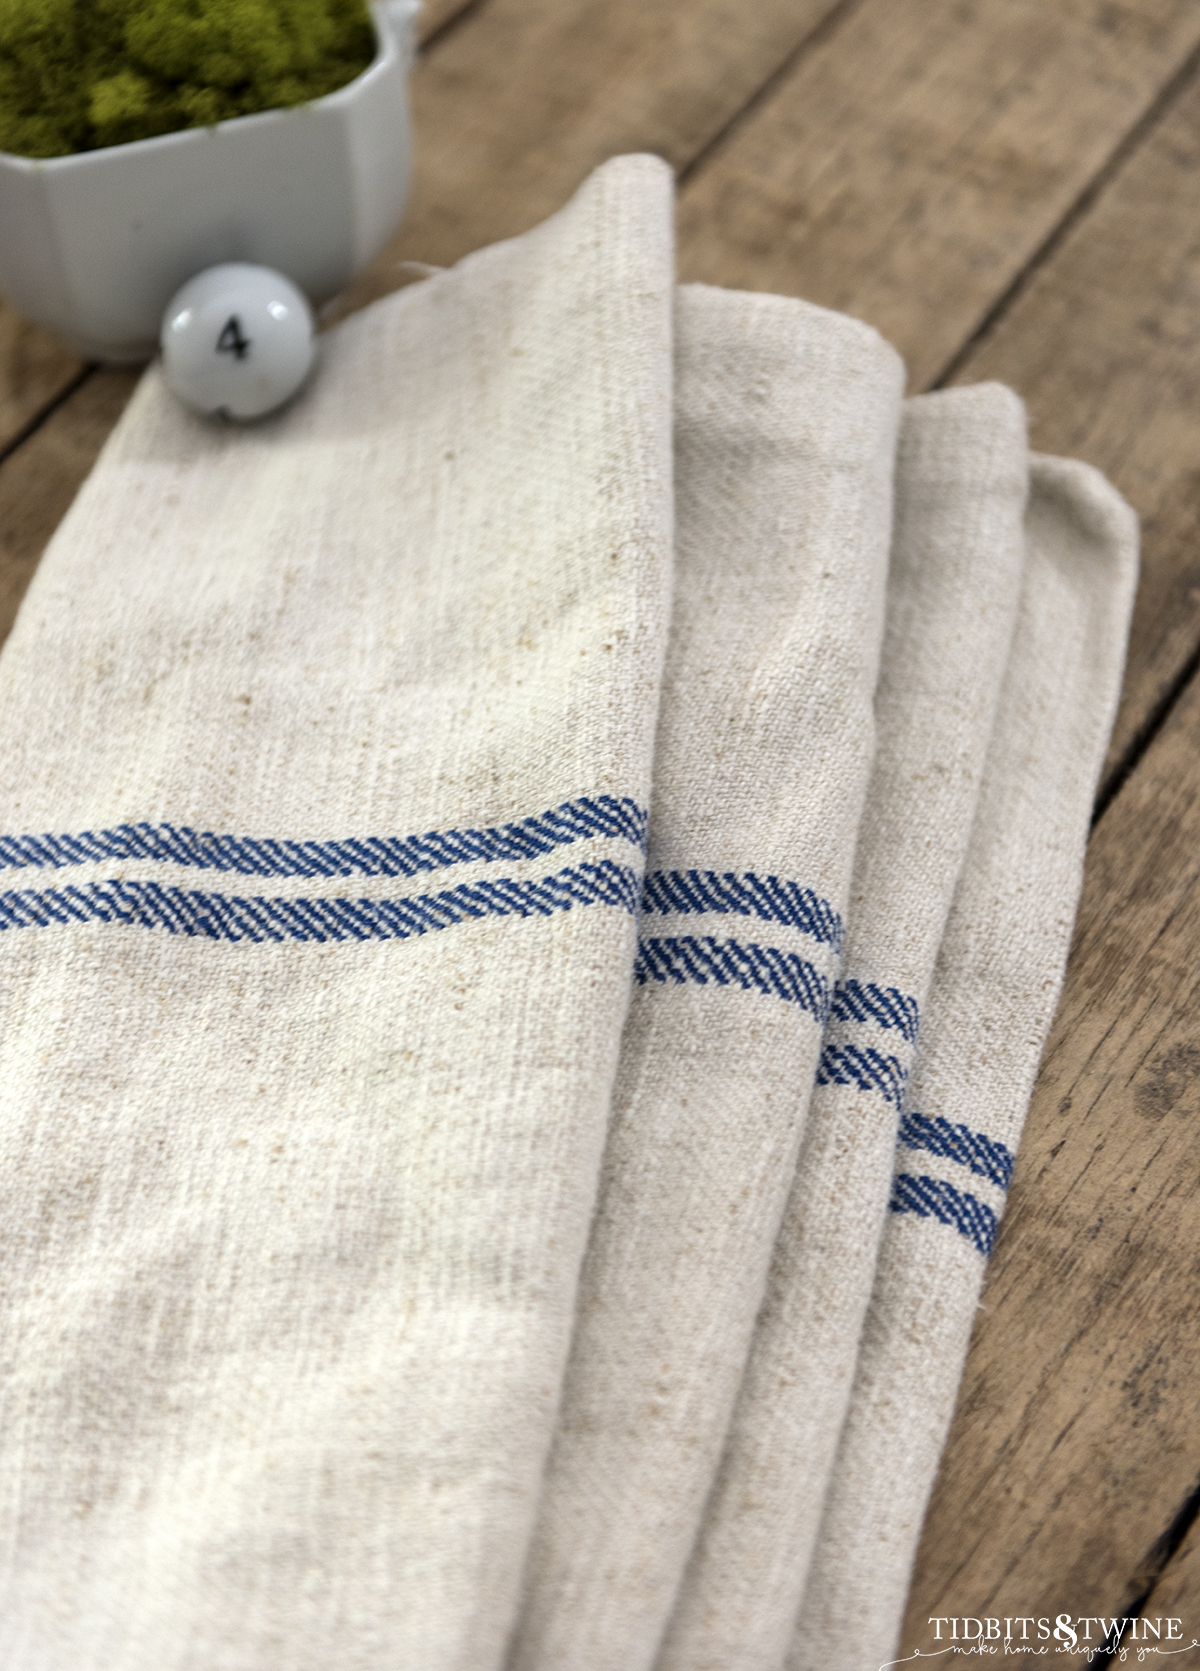 Grain Sack Blue Stripes Kitchen Washcloth Wash Cloth Grain Sack